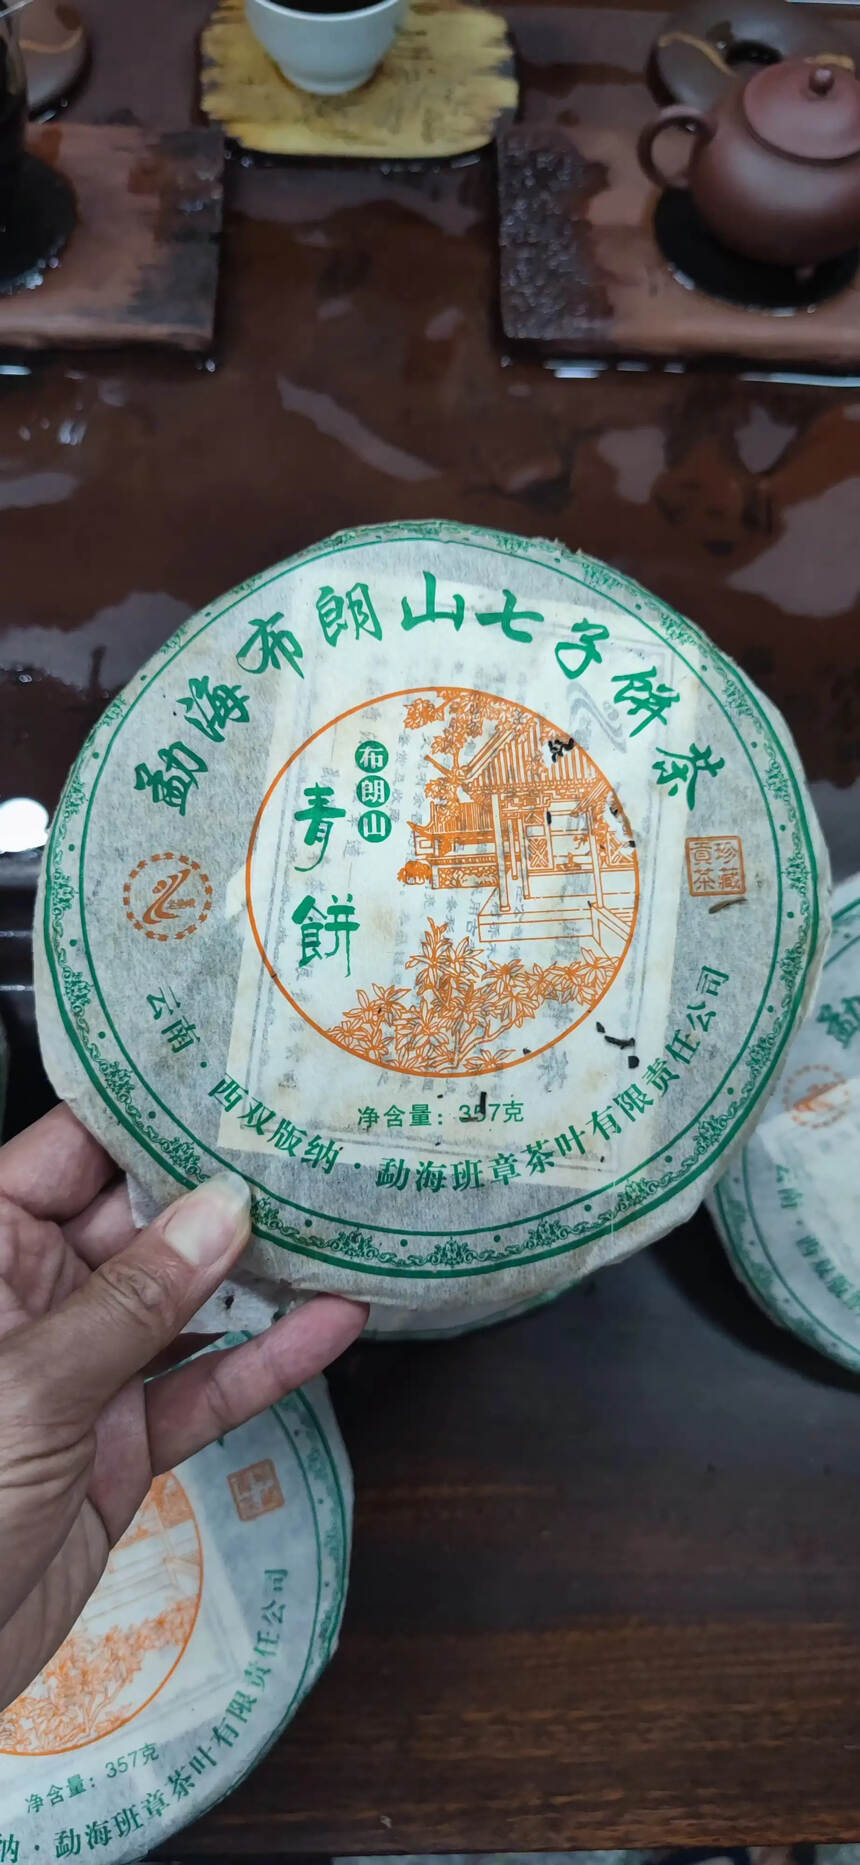 2006年老曼峨布朗青饼 ，16年转化的老茶了 口粮